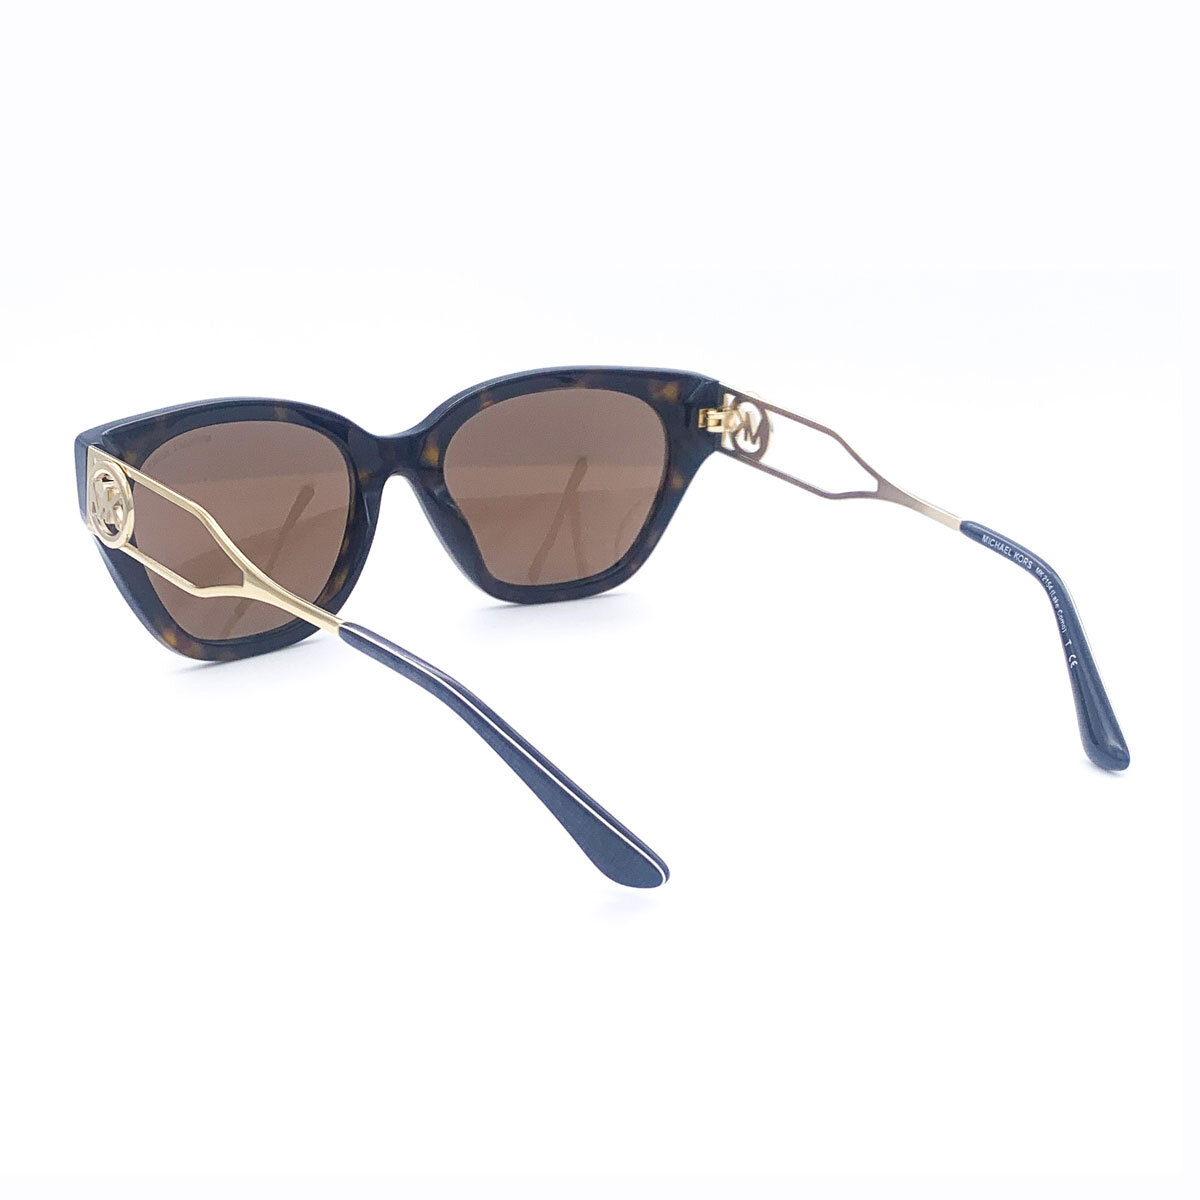 Michael Kors Lake Como Tortoise Shell Sunglasses with Bro...